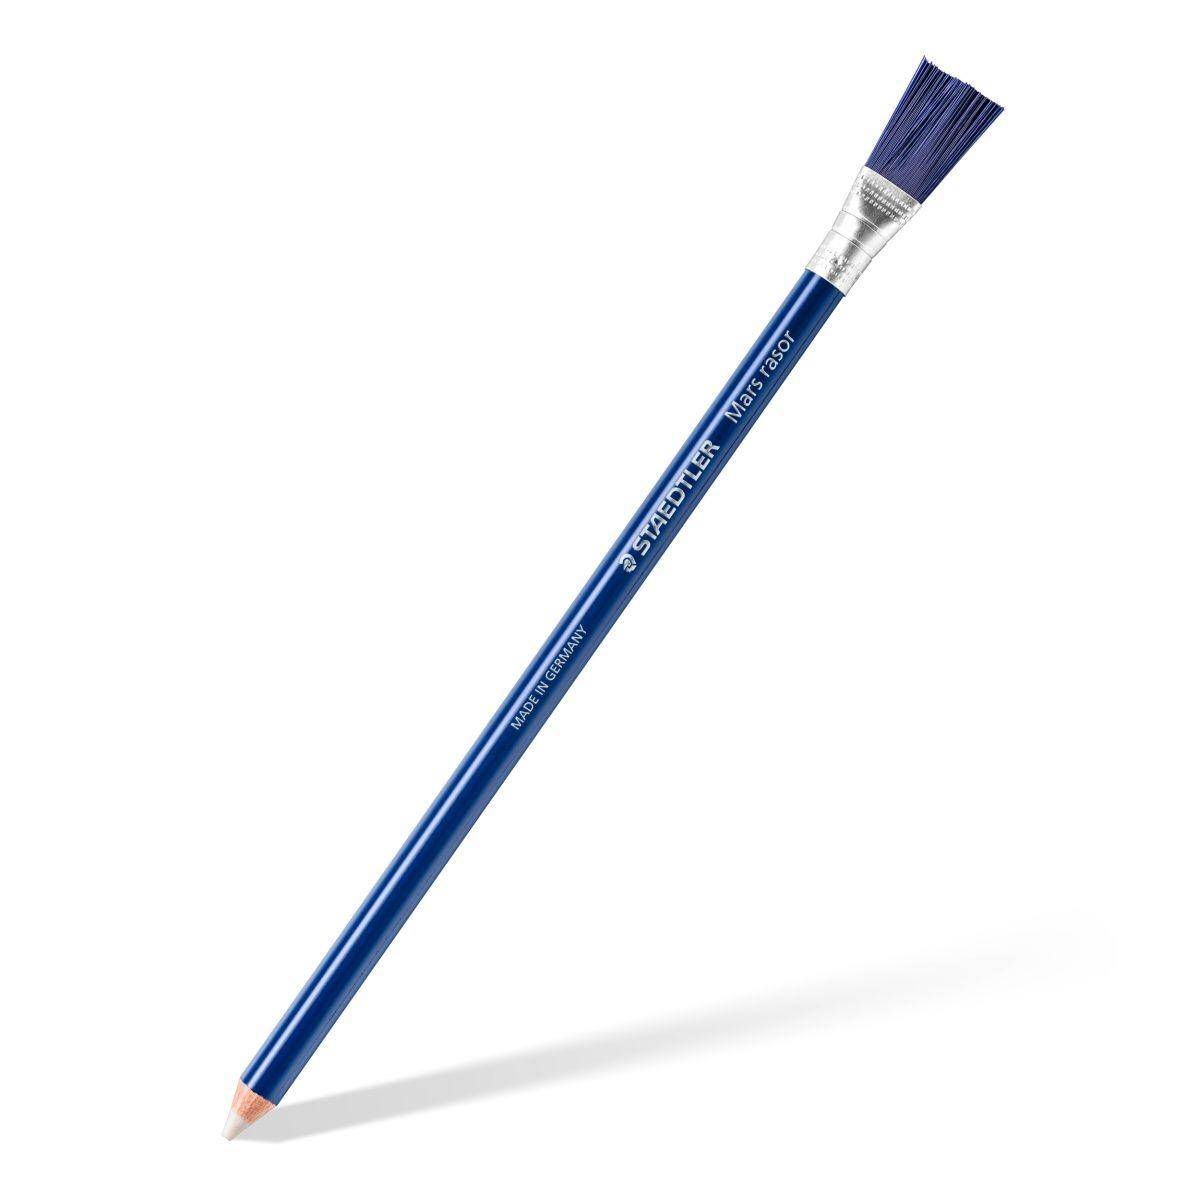 Display Gumka w ołówku z pędzelkiem Rasor do tuszu Staedtler display 12 szt.